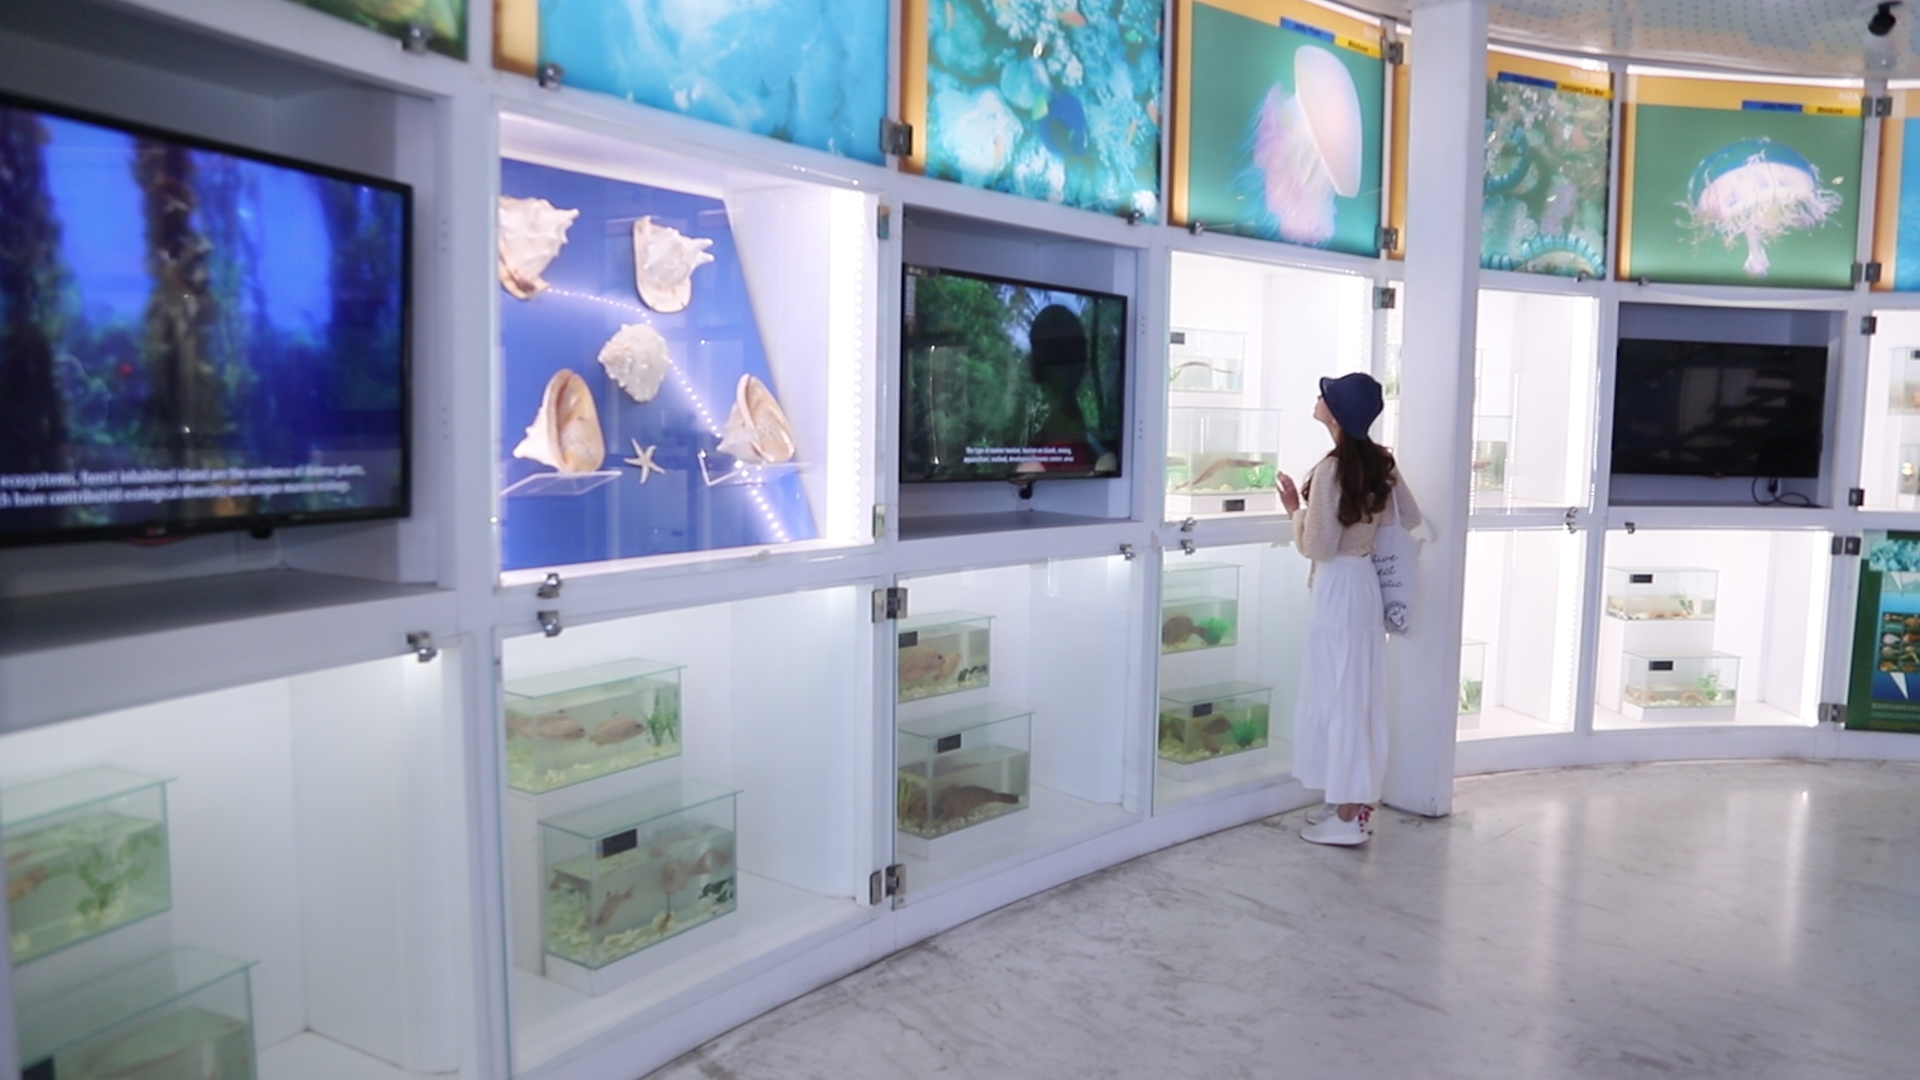 Công nghệ trình chiếu, trưng bày hiện đại góp phần thu hút du khách đến với bảo tàng Quảng Ninh.